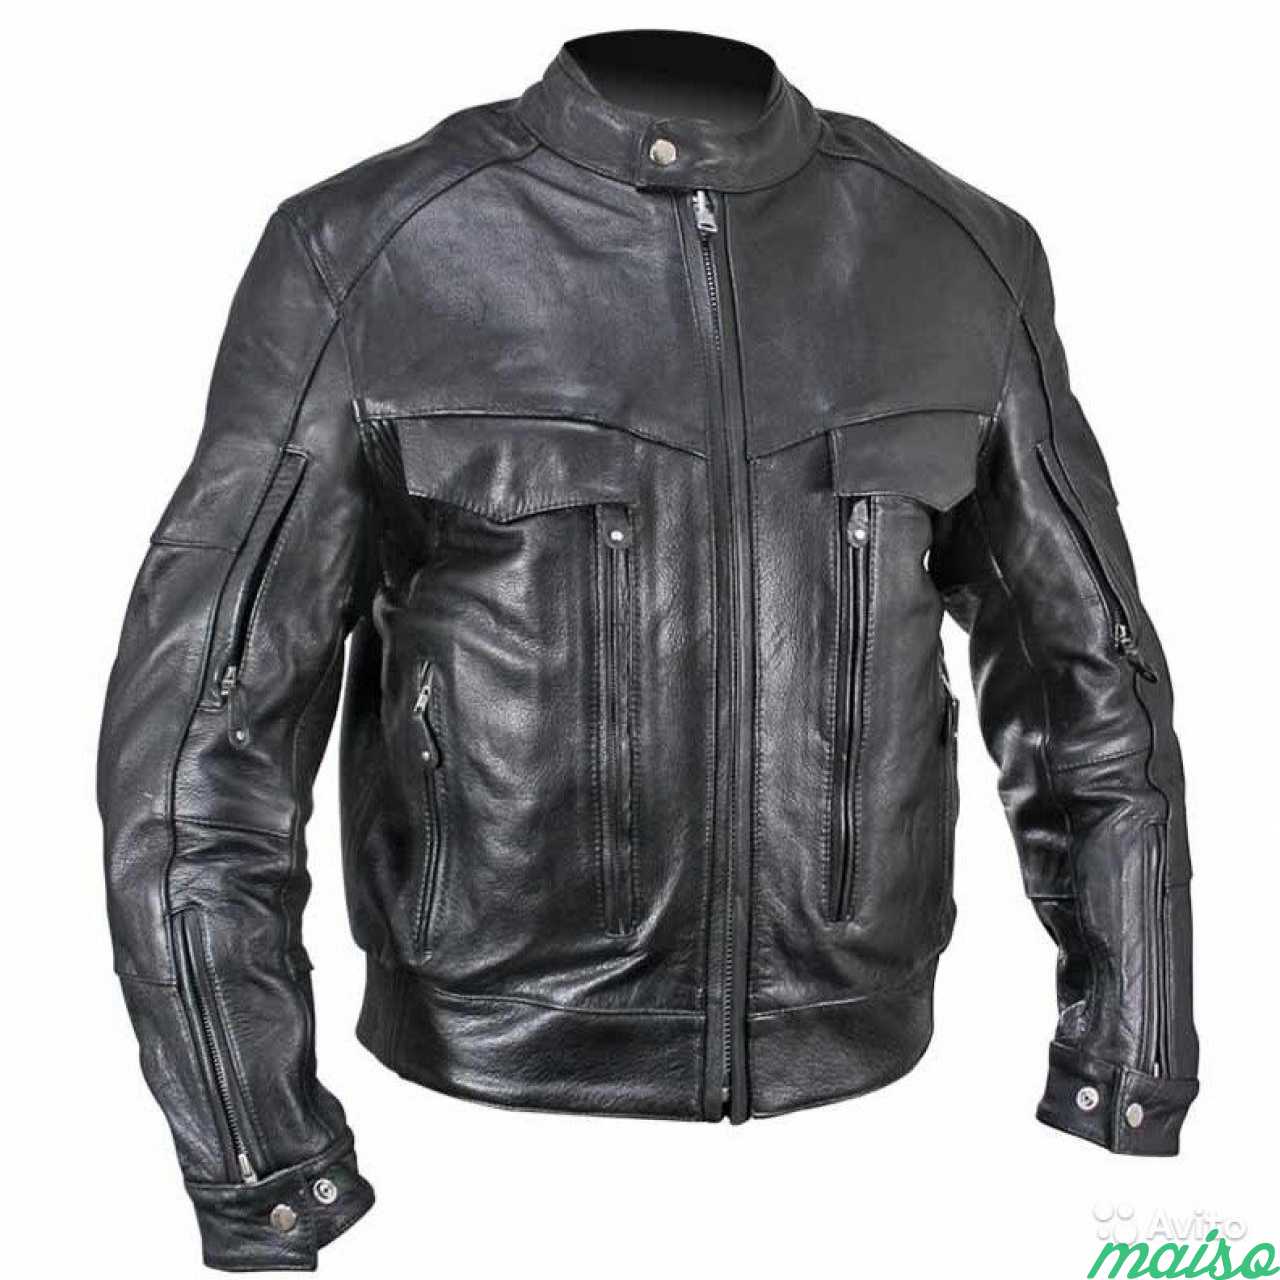 Купить кожаную куртку 54 размера. Куртка Xelement Buffalo кожаная. Мотокуртка Xelement. Мотокуртка Xelement кожаная. Куртка Xelement байкерская.